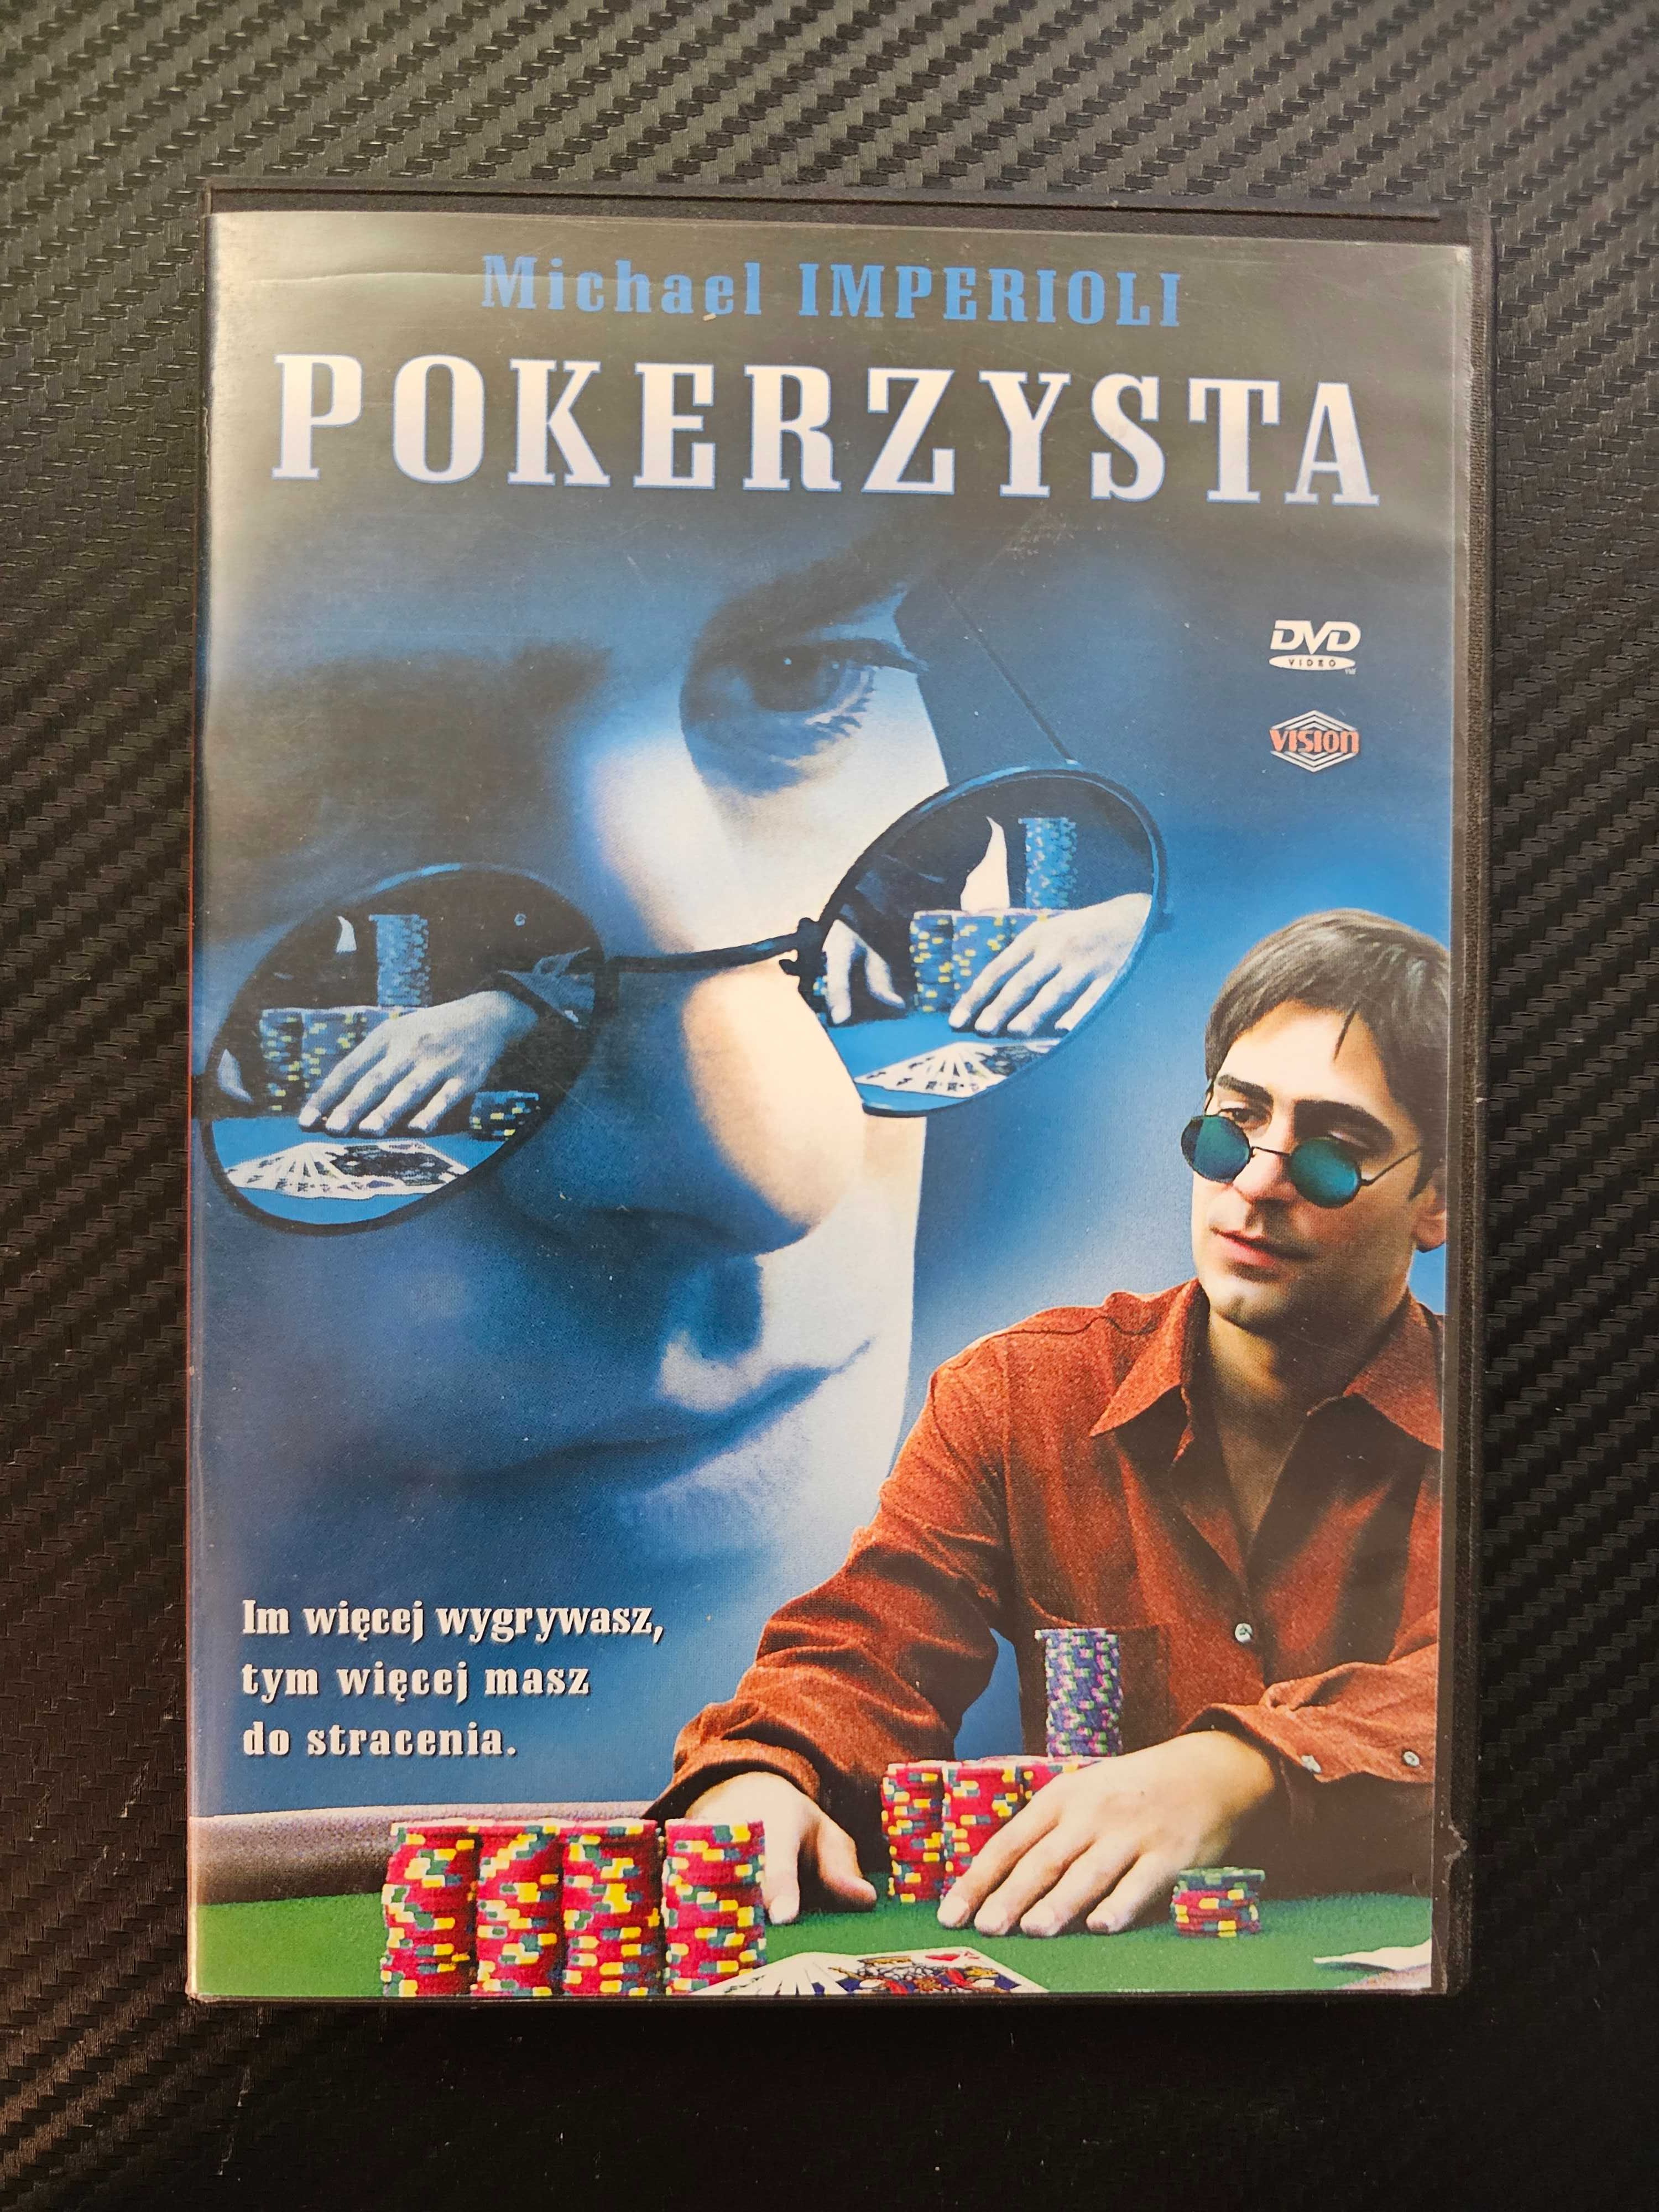 POKERZYSTA [Stuey] [2003] - Michael Imperioli - Pełne Wydanie DVD